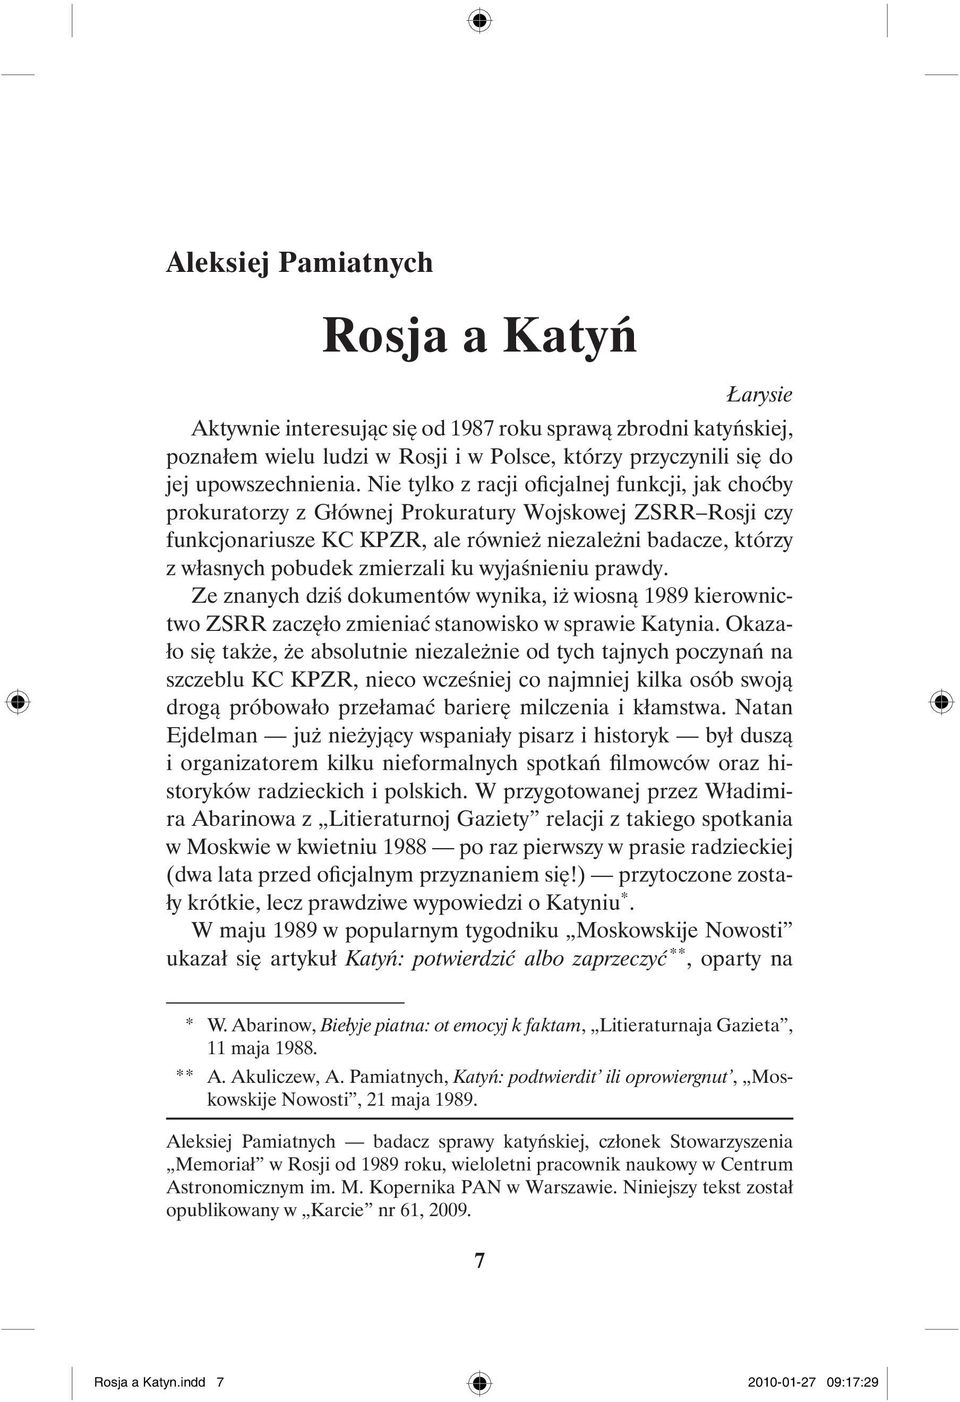 zmierzali ku wyjaśnieniu prawdy. Ze znanych dziś dokumentów wynika, iż wiosną 1989 kierownictwo ZSRR zaczęło zmieniać stanowisko w sprawie Katynia.